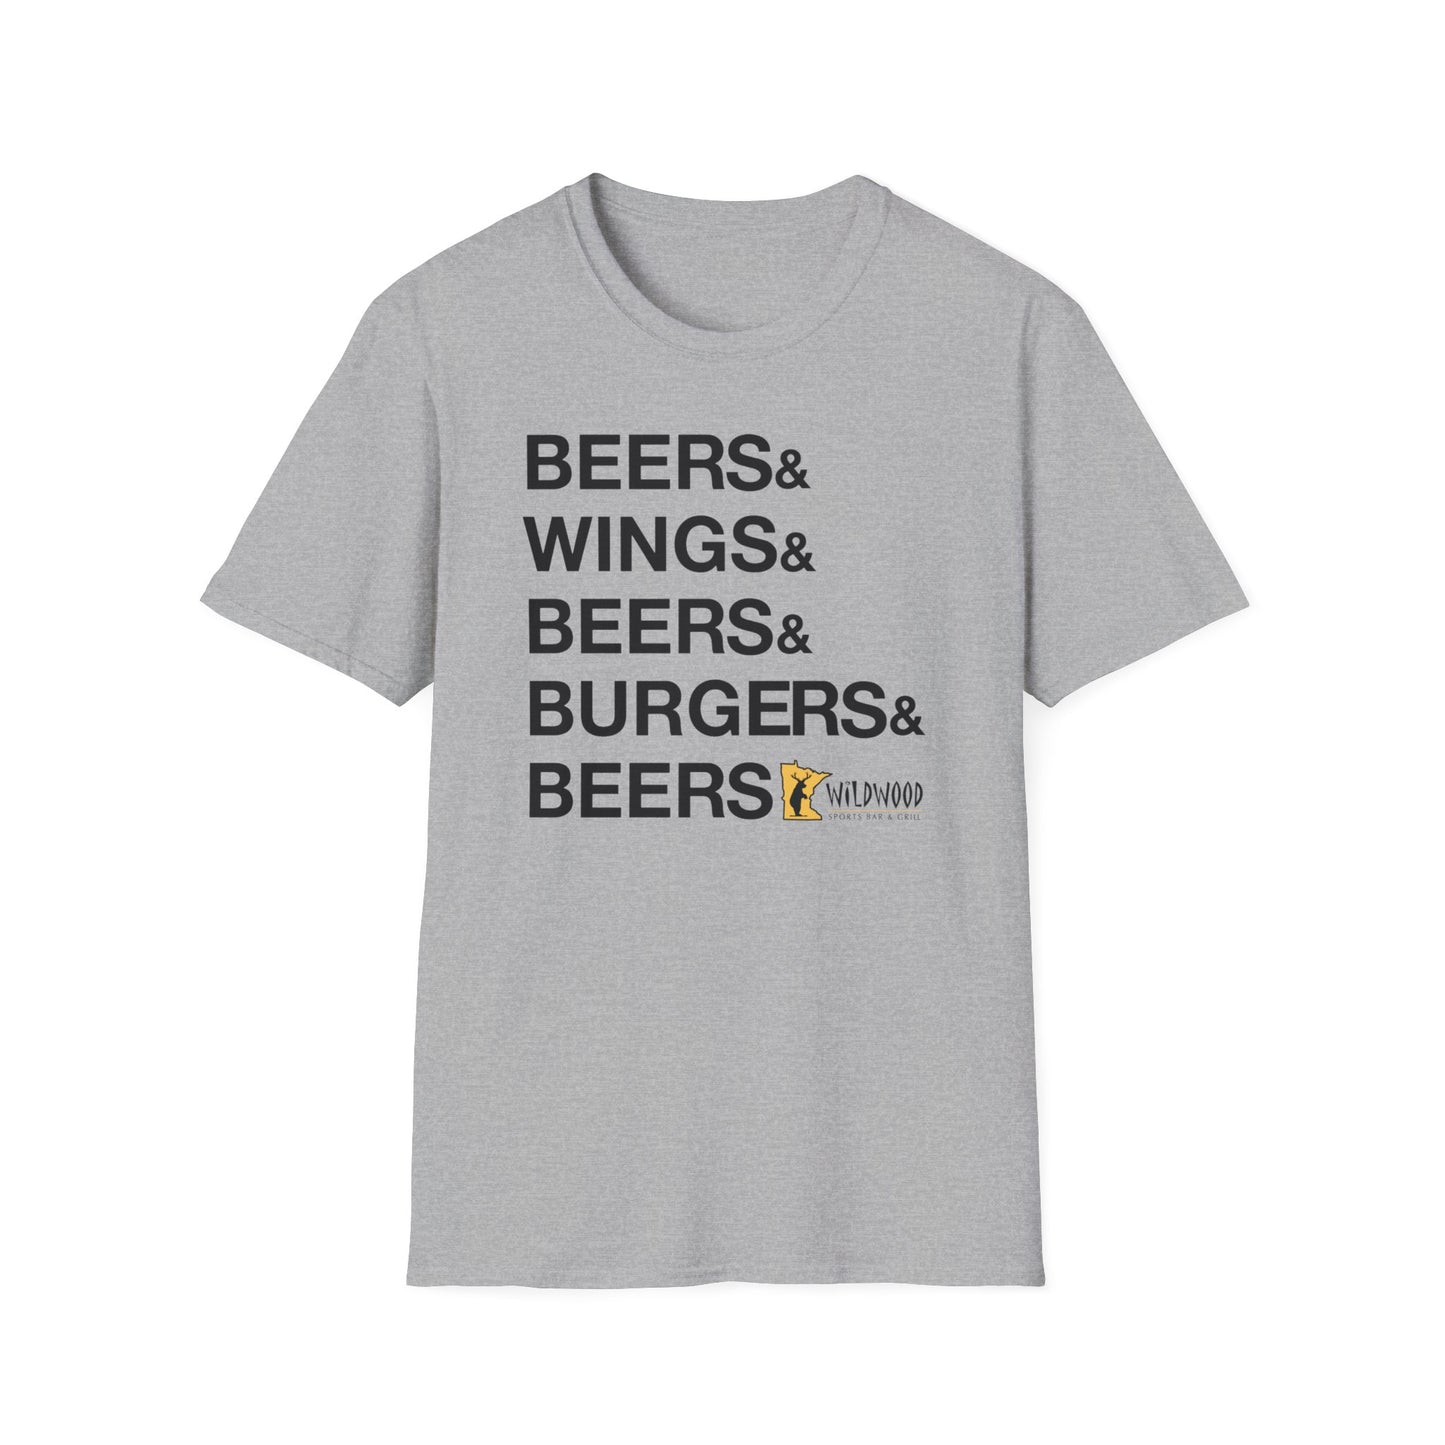 Wildwood Beers & Wings & Beers & Burgers & Beers T-shirt